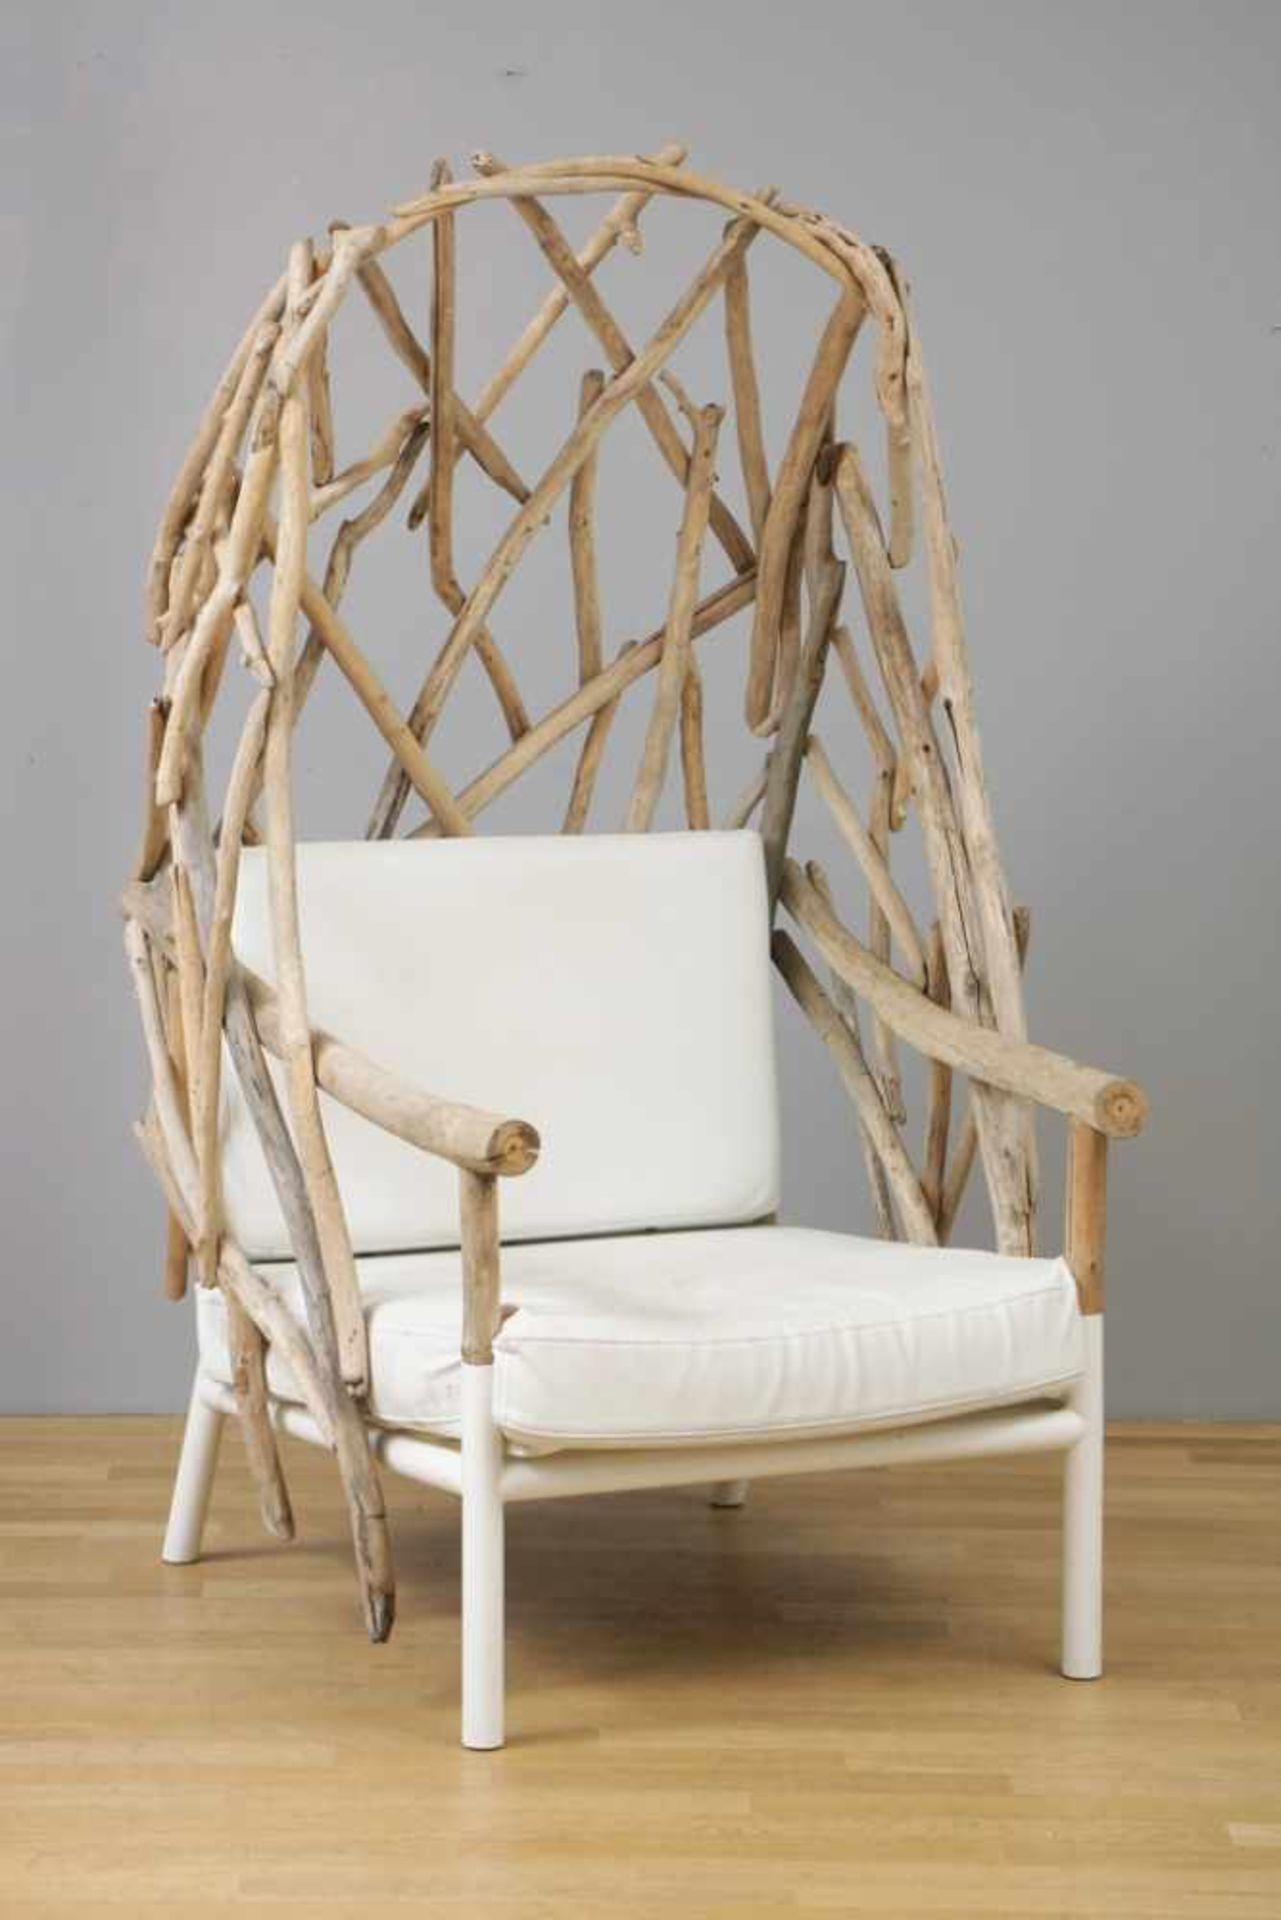 Großer Garten-/Outdoor-Sessel im Stile eines Strandkorbs hoher Rücken aus Treibholz, Sitz- und